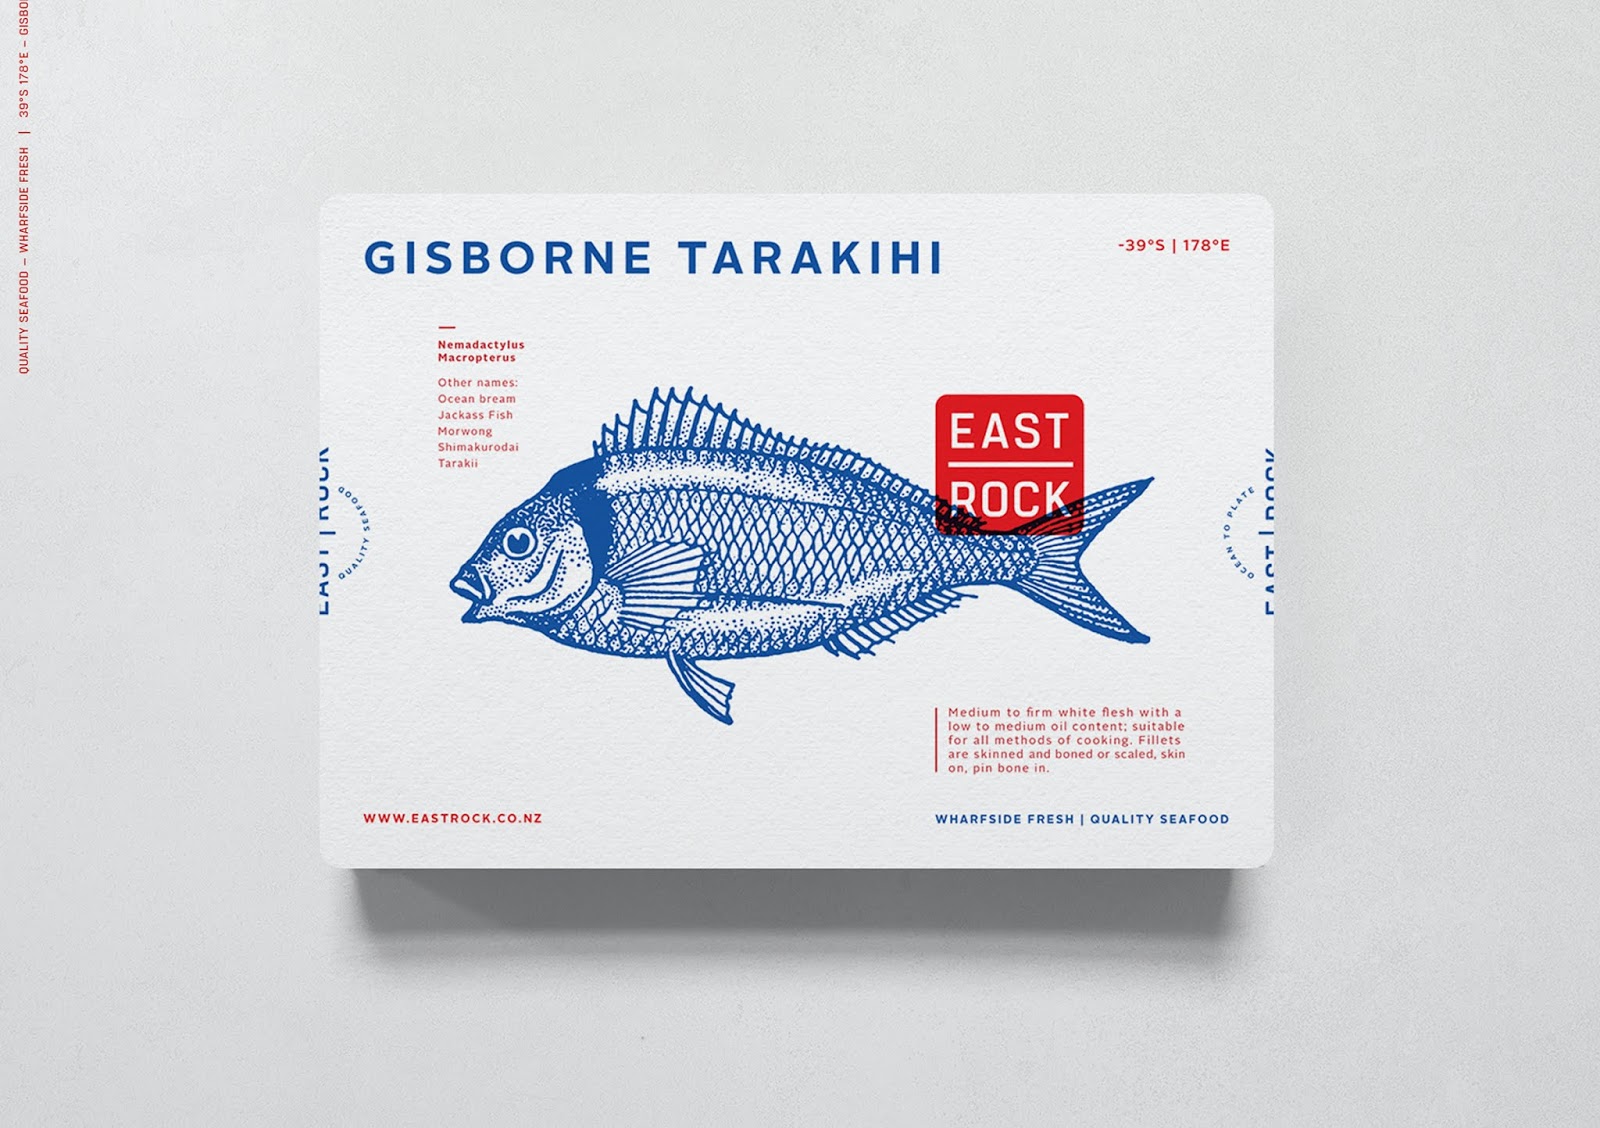 海鲜食品包装西安oe欧亿体育app官方下载
品牌包装设计